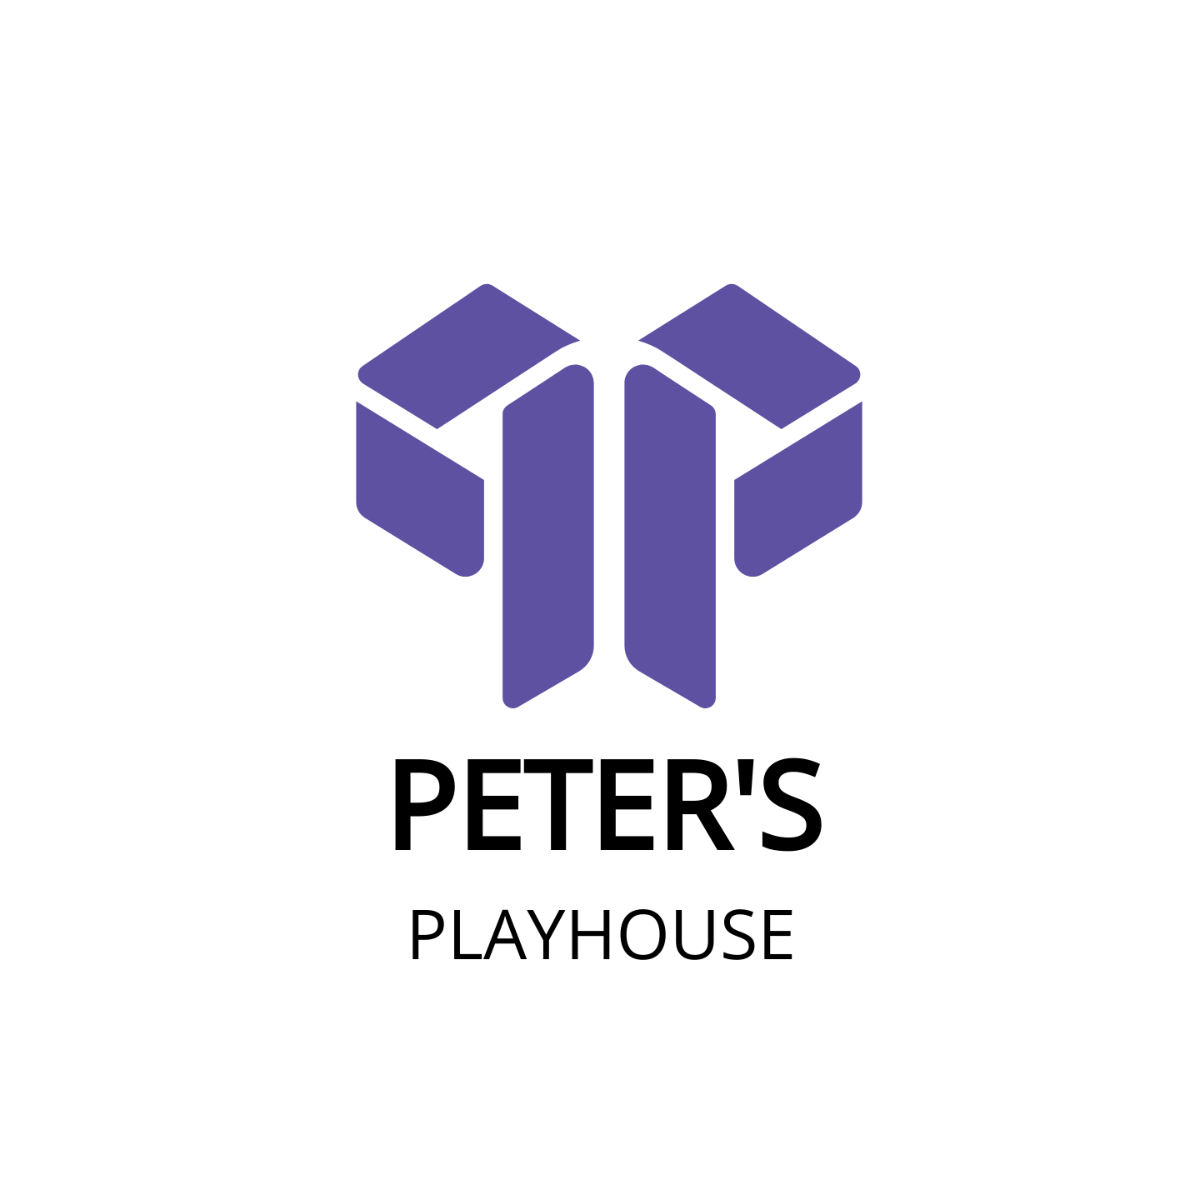 Peter's Playhouse Logo Template